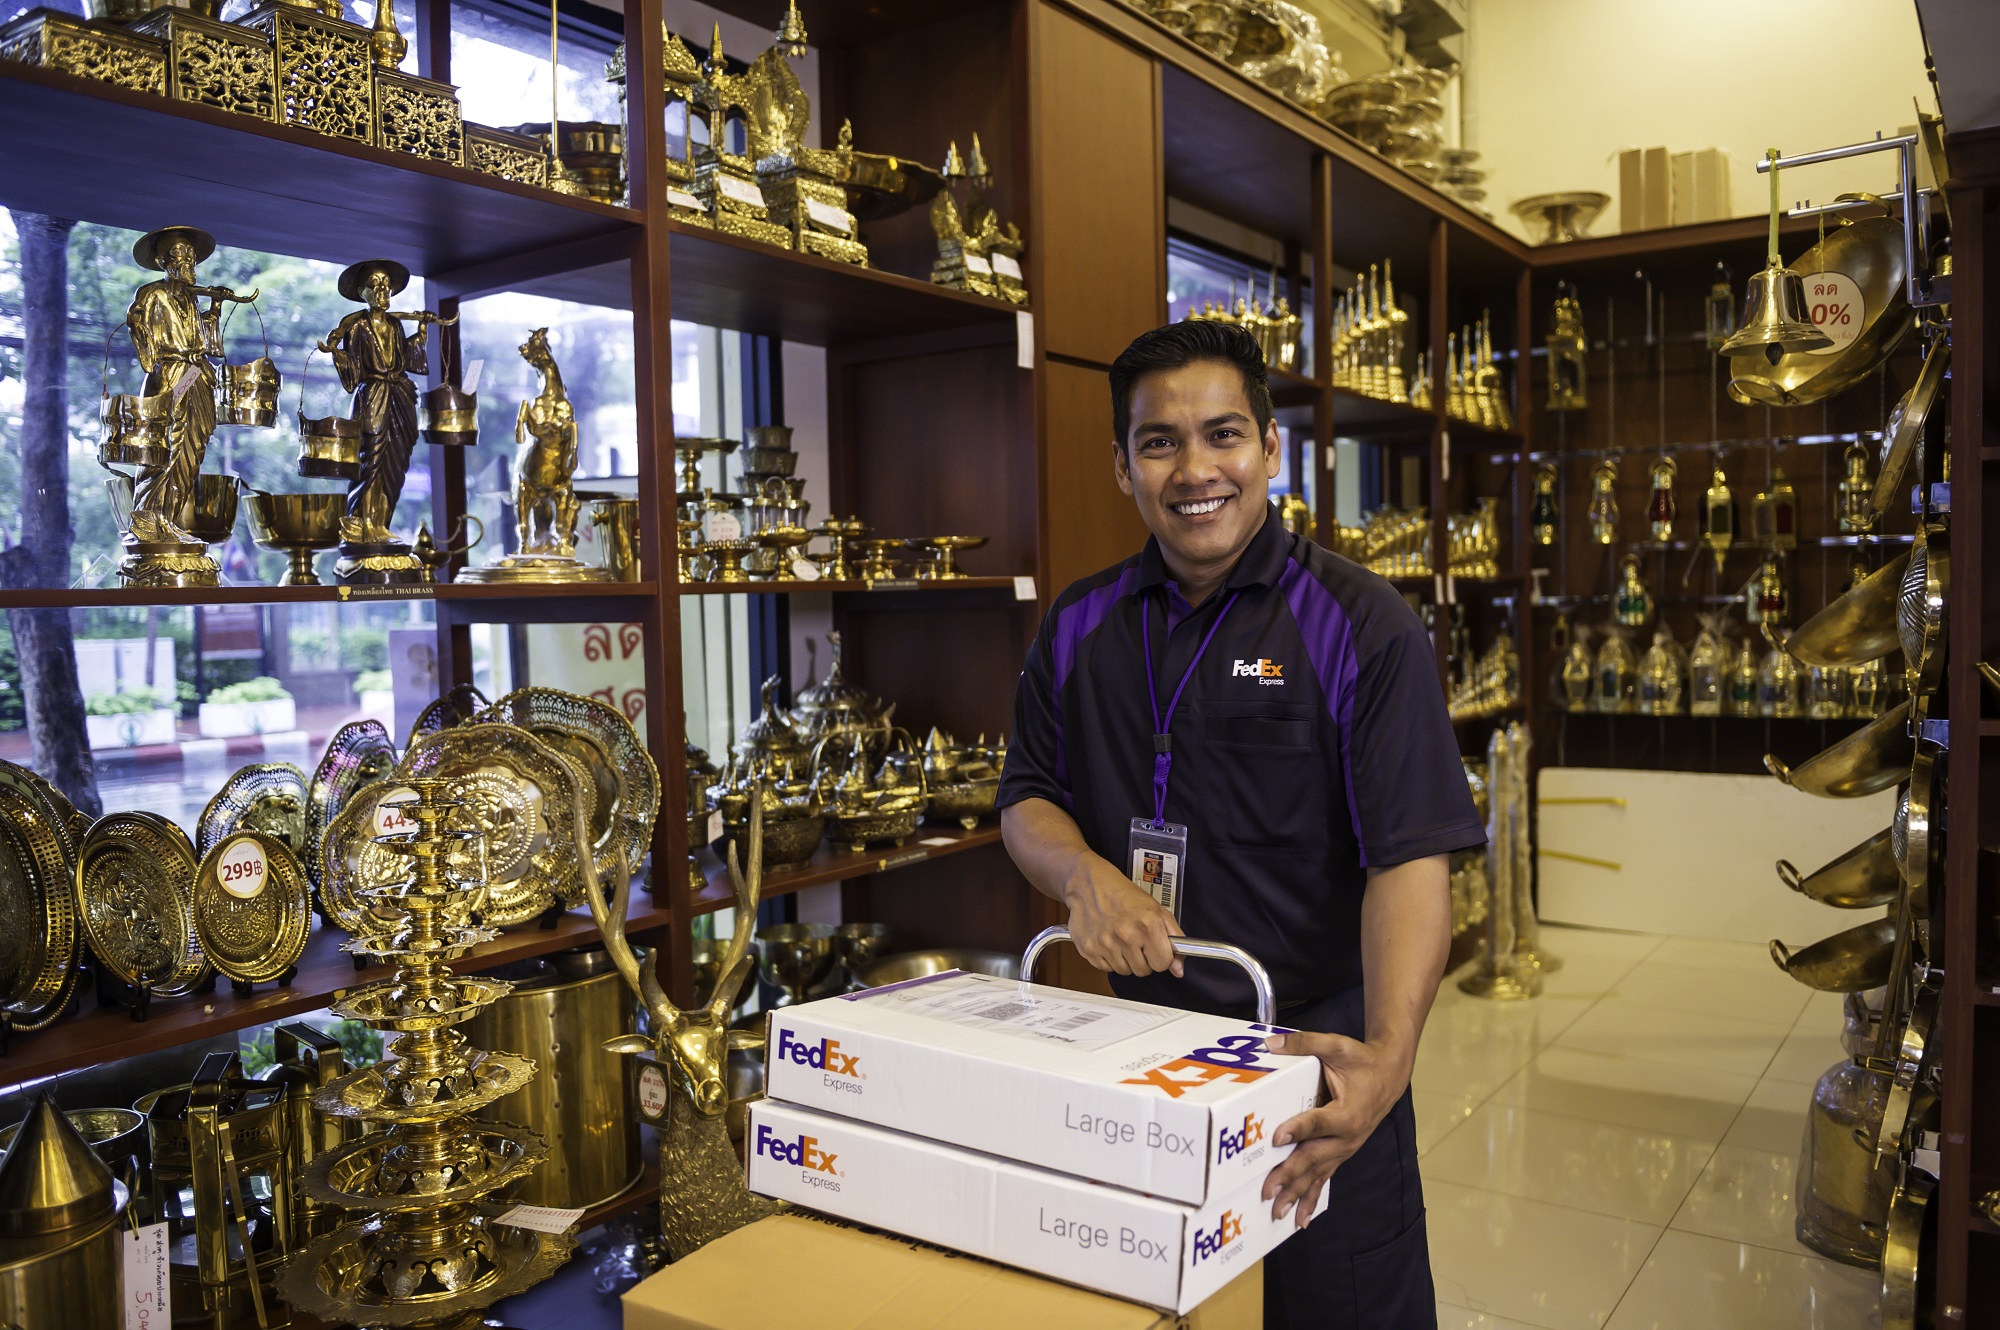 เฟดเอ็กซ์ หนุนธุรกิจ SME ในประเทศไทย เปิดบริการใหม่ FedEx Delivery Manager ปรับเปลี่ยนวันและสถานที่จัดส่งได้ตามต้องการ ฟรี!